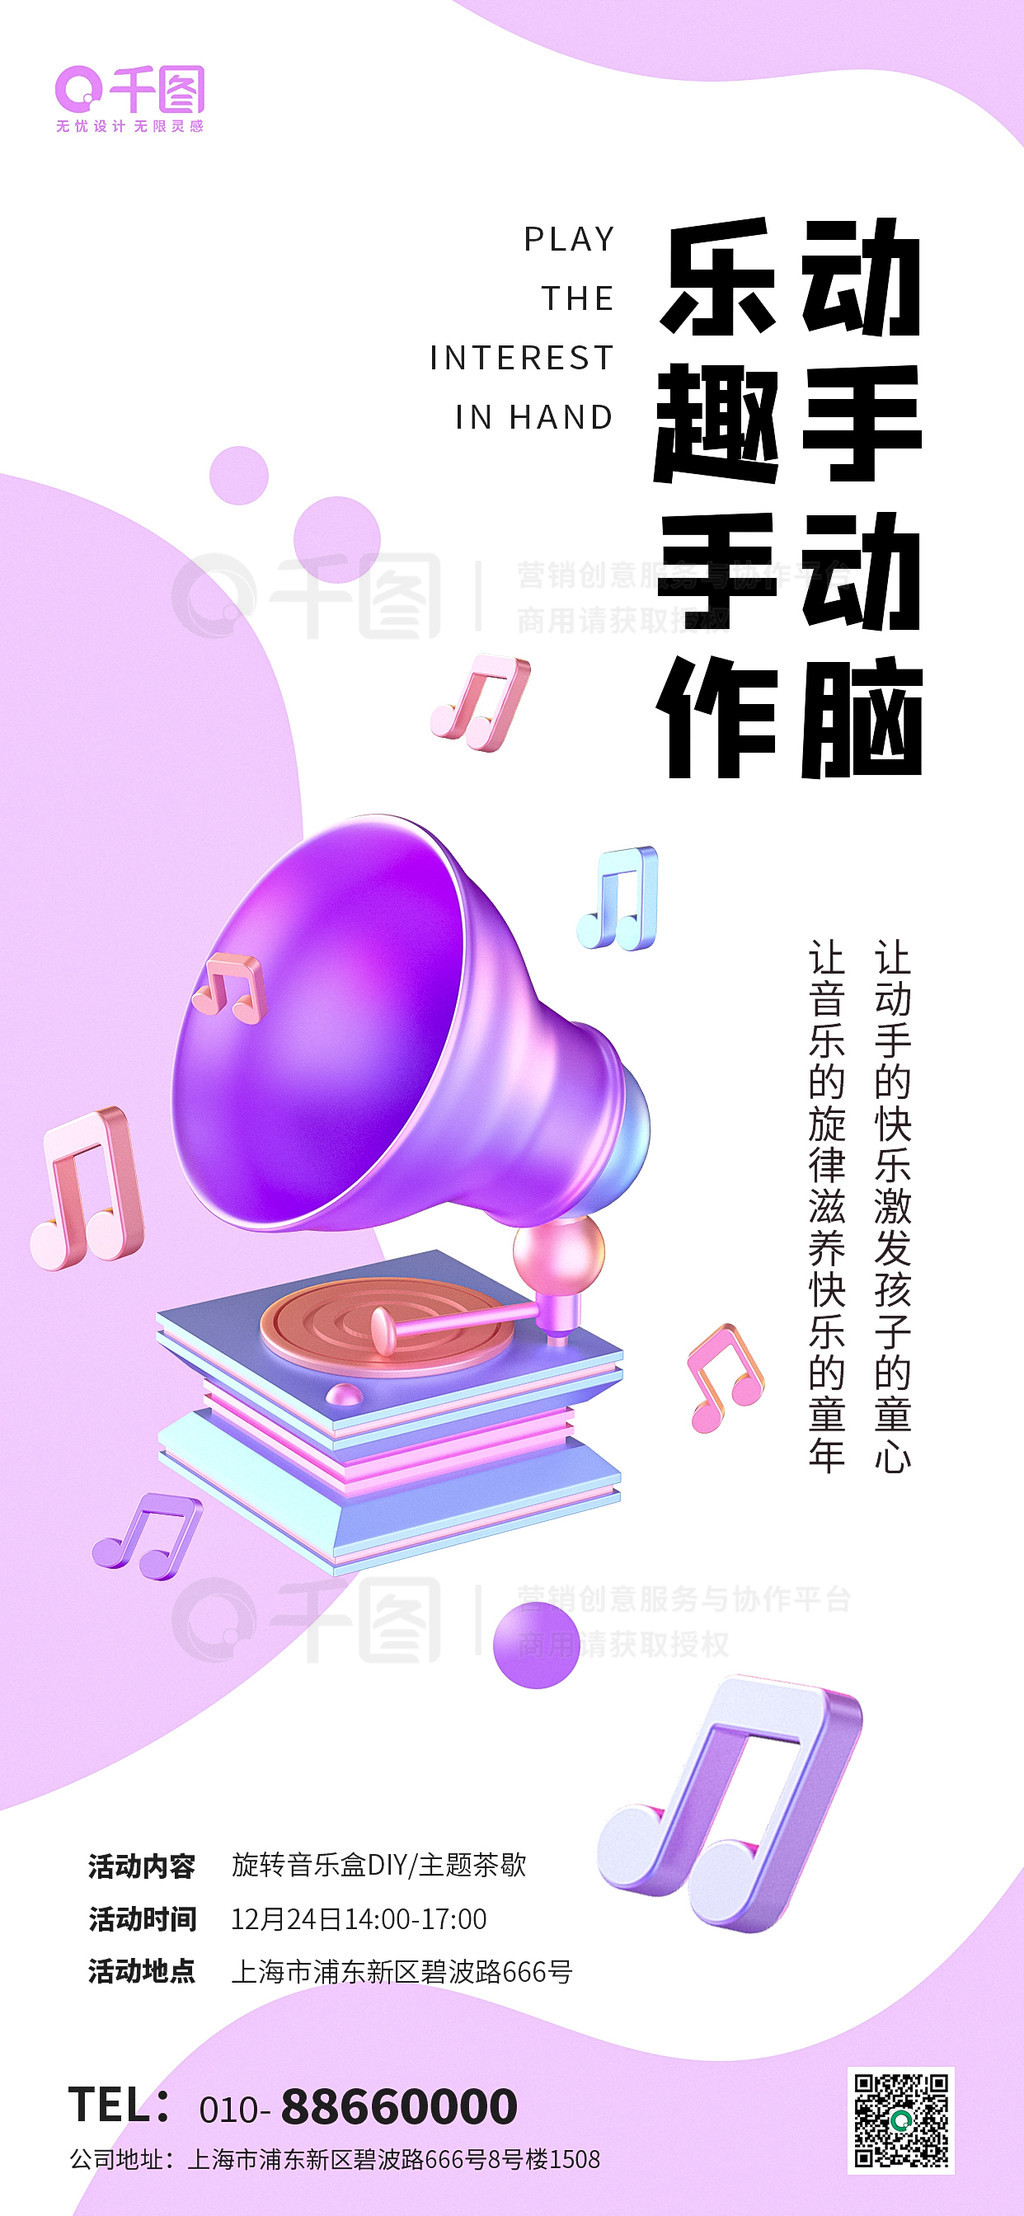 手作DIY手工活动休闲娱乐促销音乐盒海报